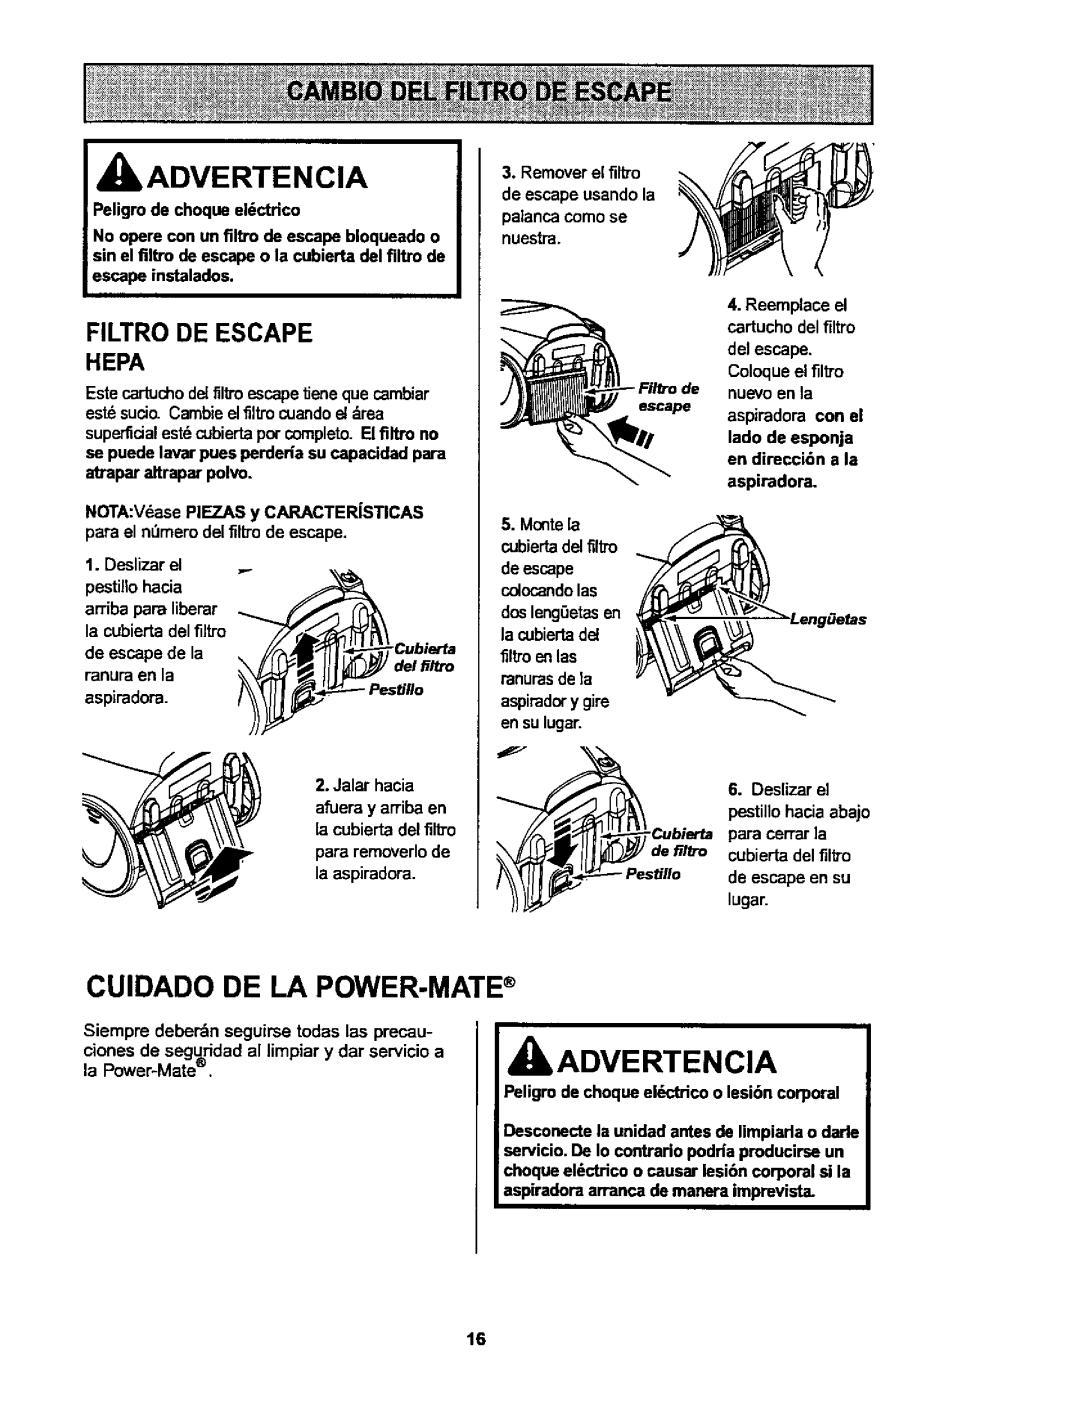 Kenmore 116.25914, 116.25915 owner manual Cuidado De La Power-Mate, Filtro De Escape Hepa, IbADVERTENCIA, Advertencia 